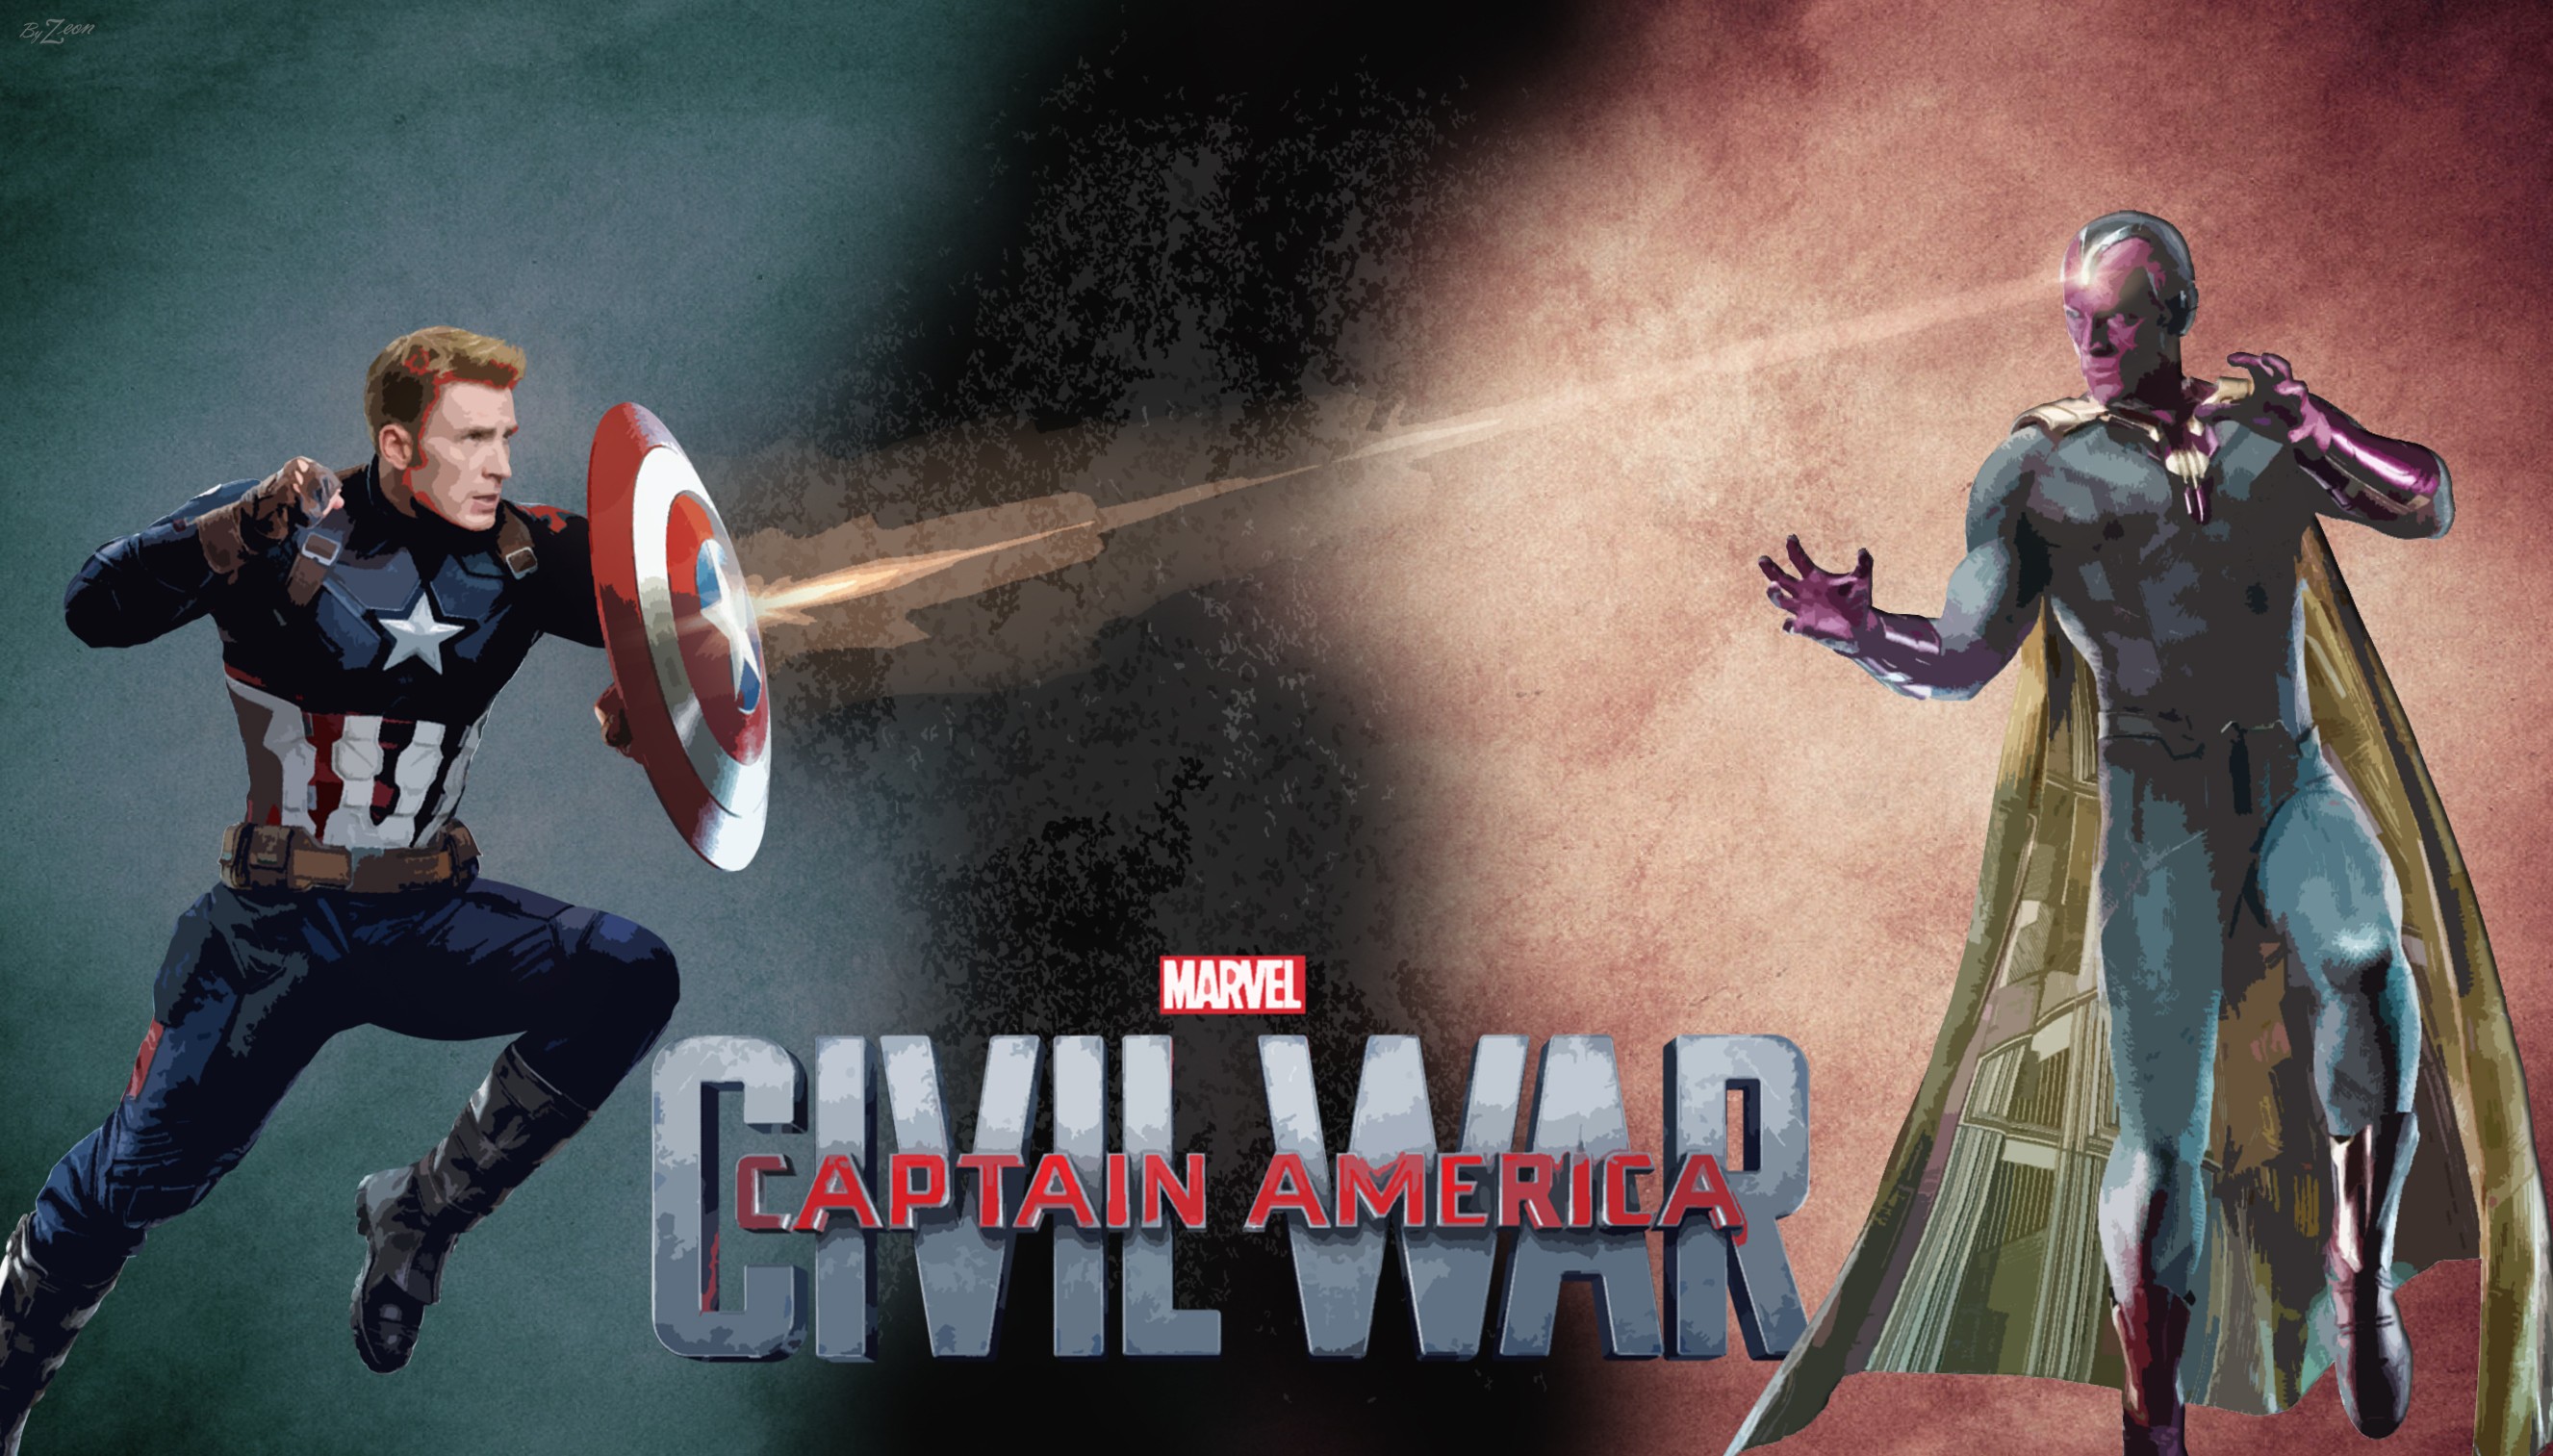 General 2653x1513 The Vision Captain America: Civil War Civil War (comics) Captain America Vision movies Marvel Cinematic Universe superhero digital art